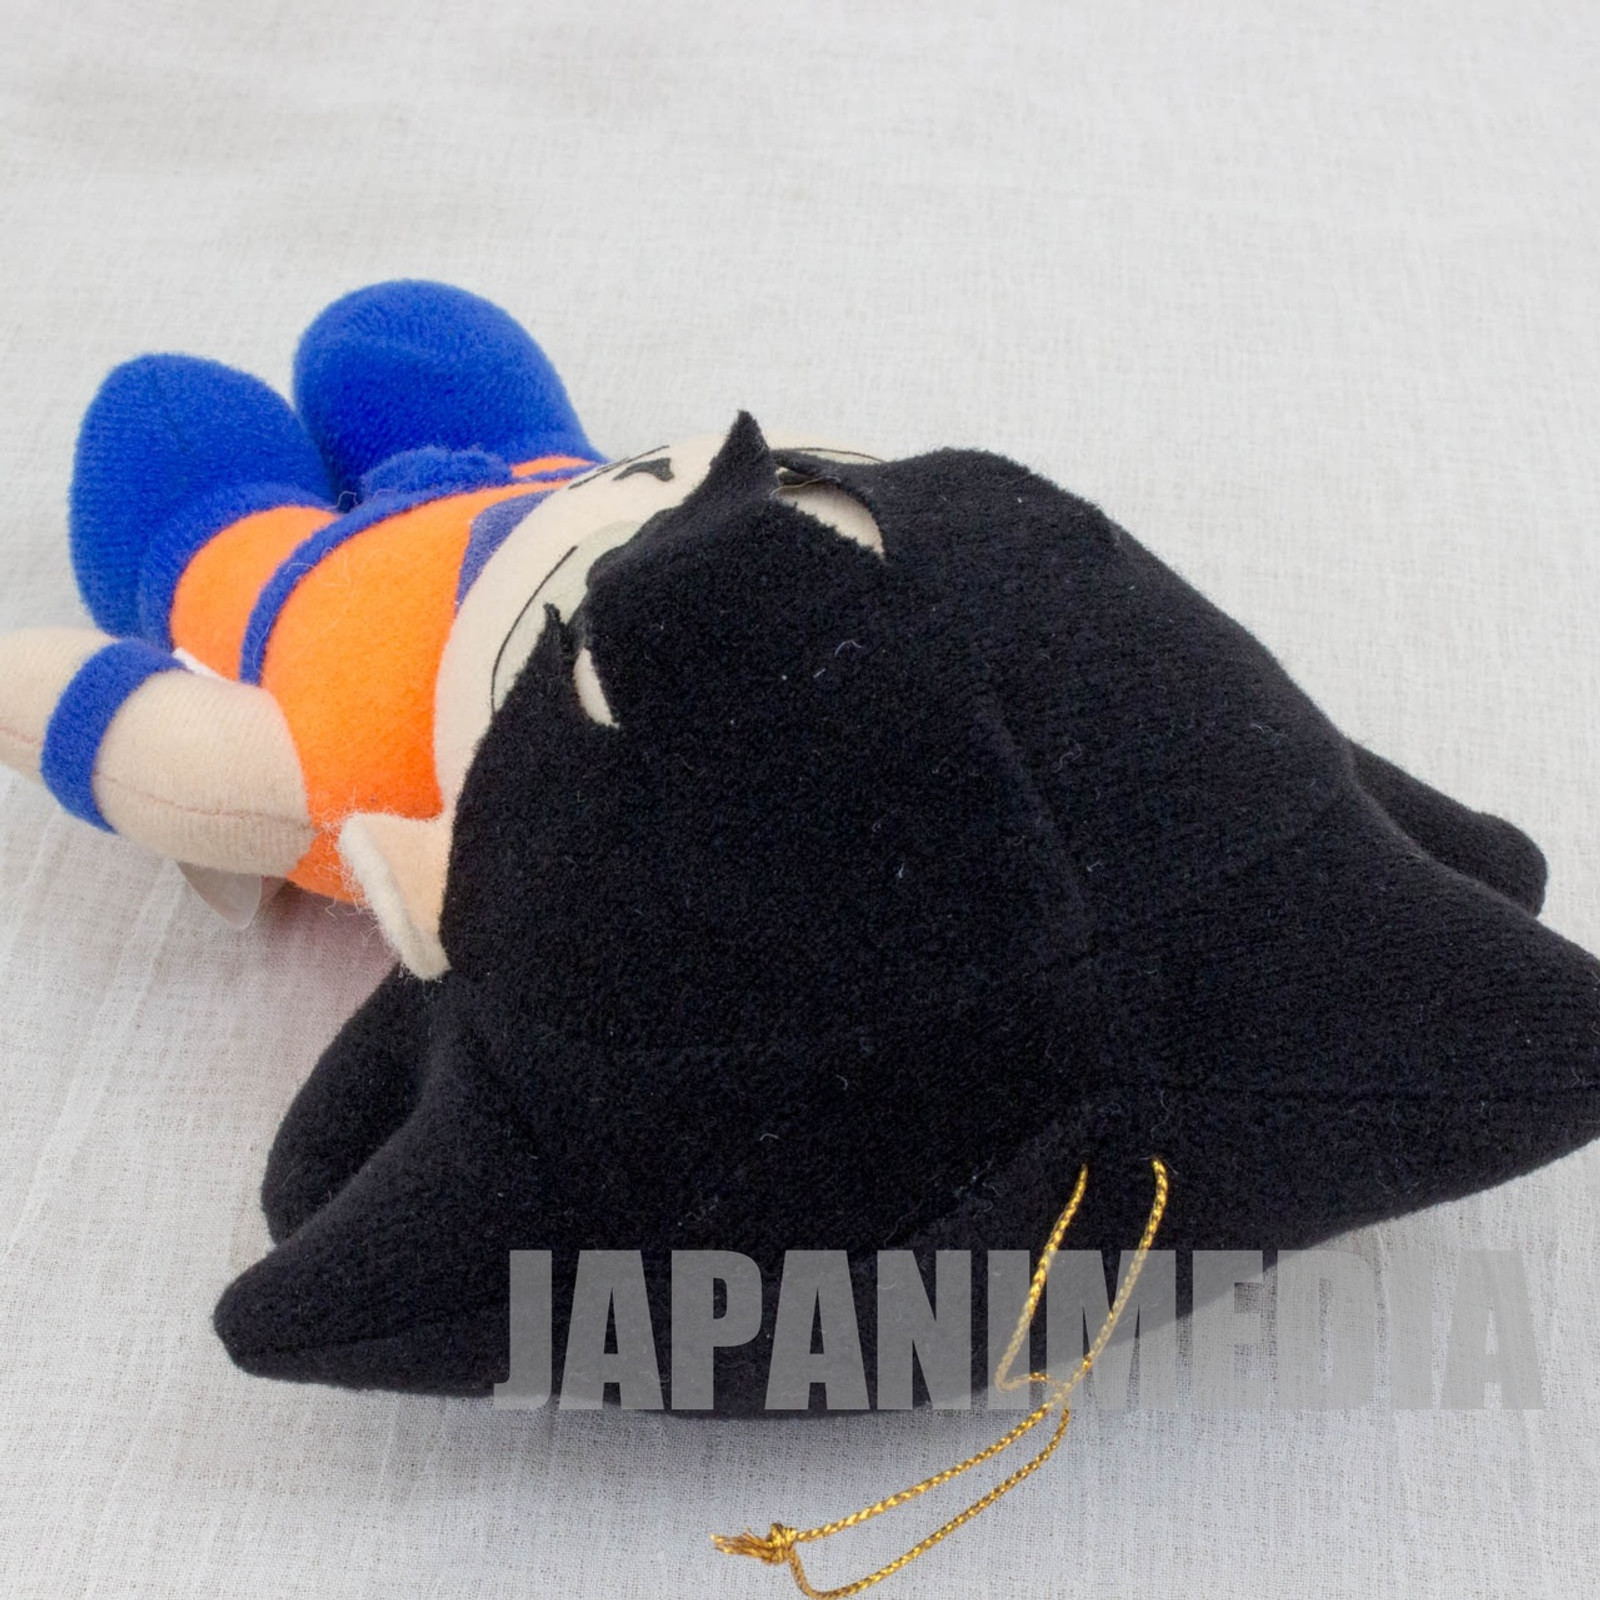 Dragon Ball Z Son Gokou Plush Doll Figure 8" Banpresto JAPAN ANIME MANGA